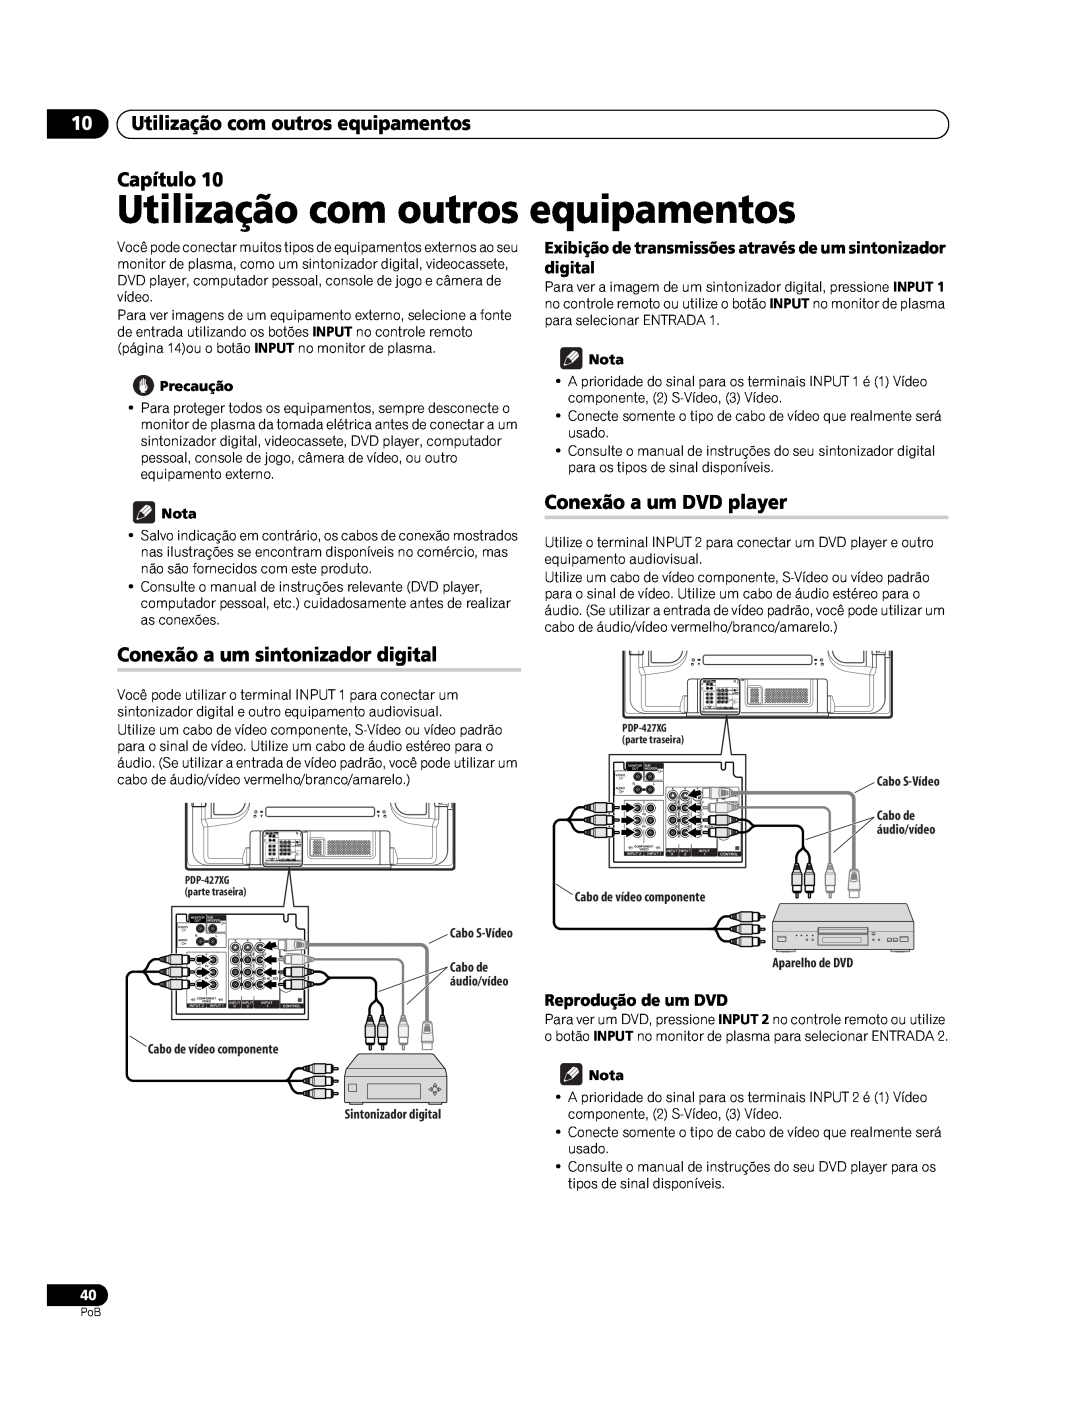 Pioneer PDP-427XG manual Utilização com outros equipamentos Capítulo, Conexão a um DVD player, Reprodução de um DVD 